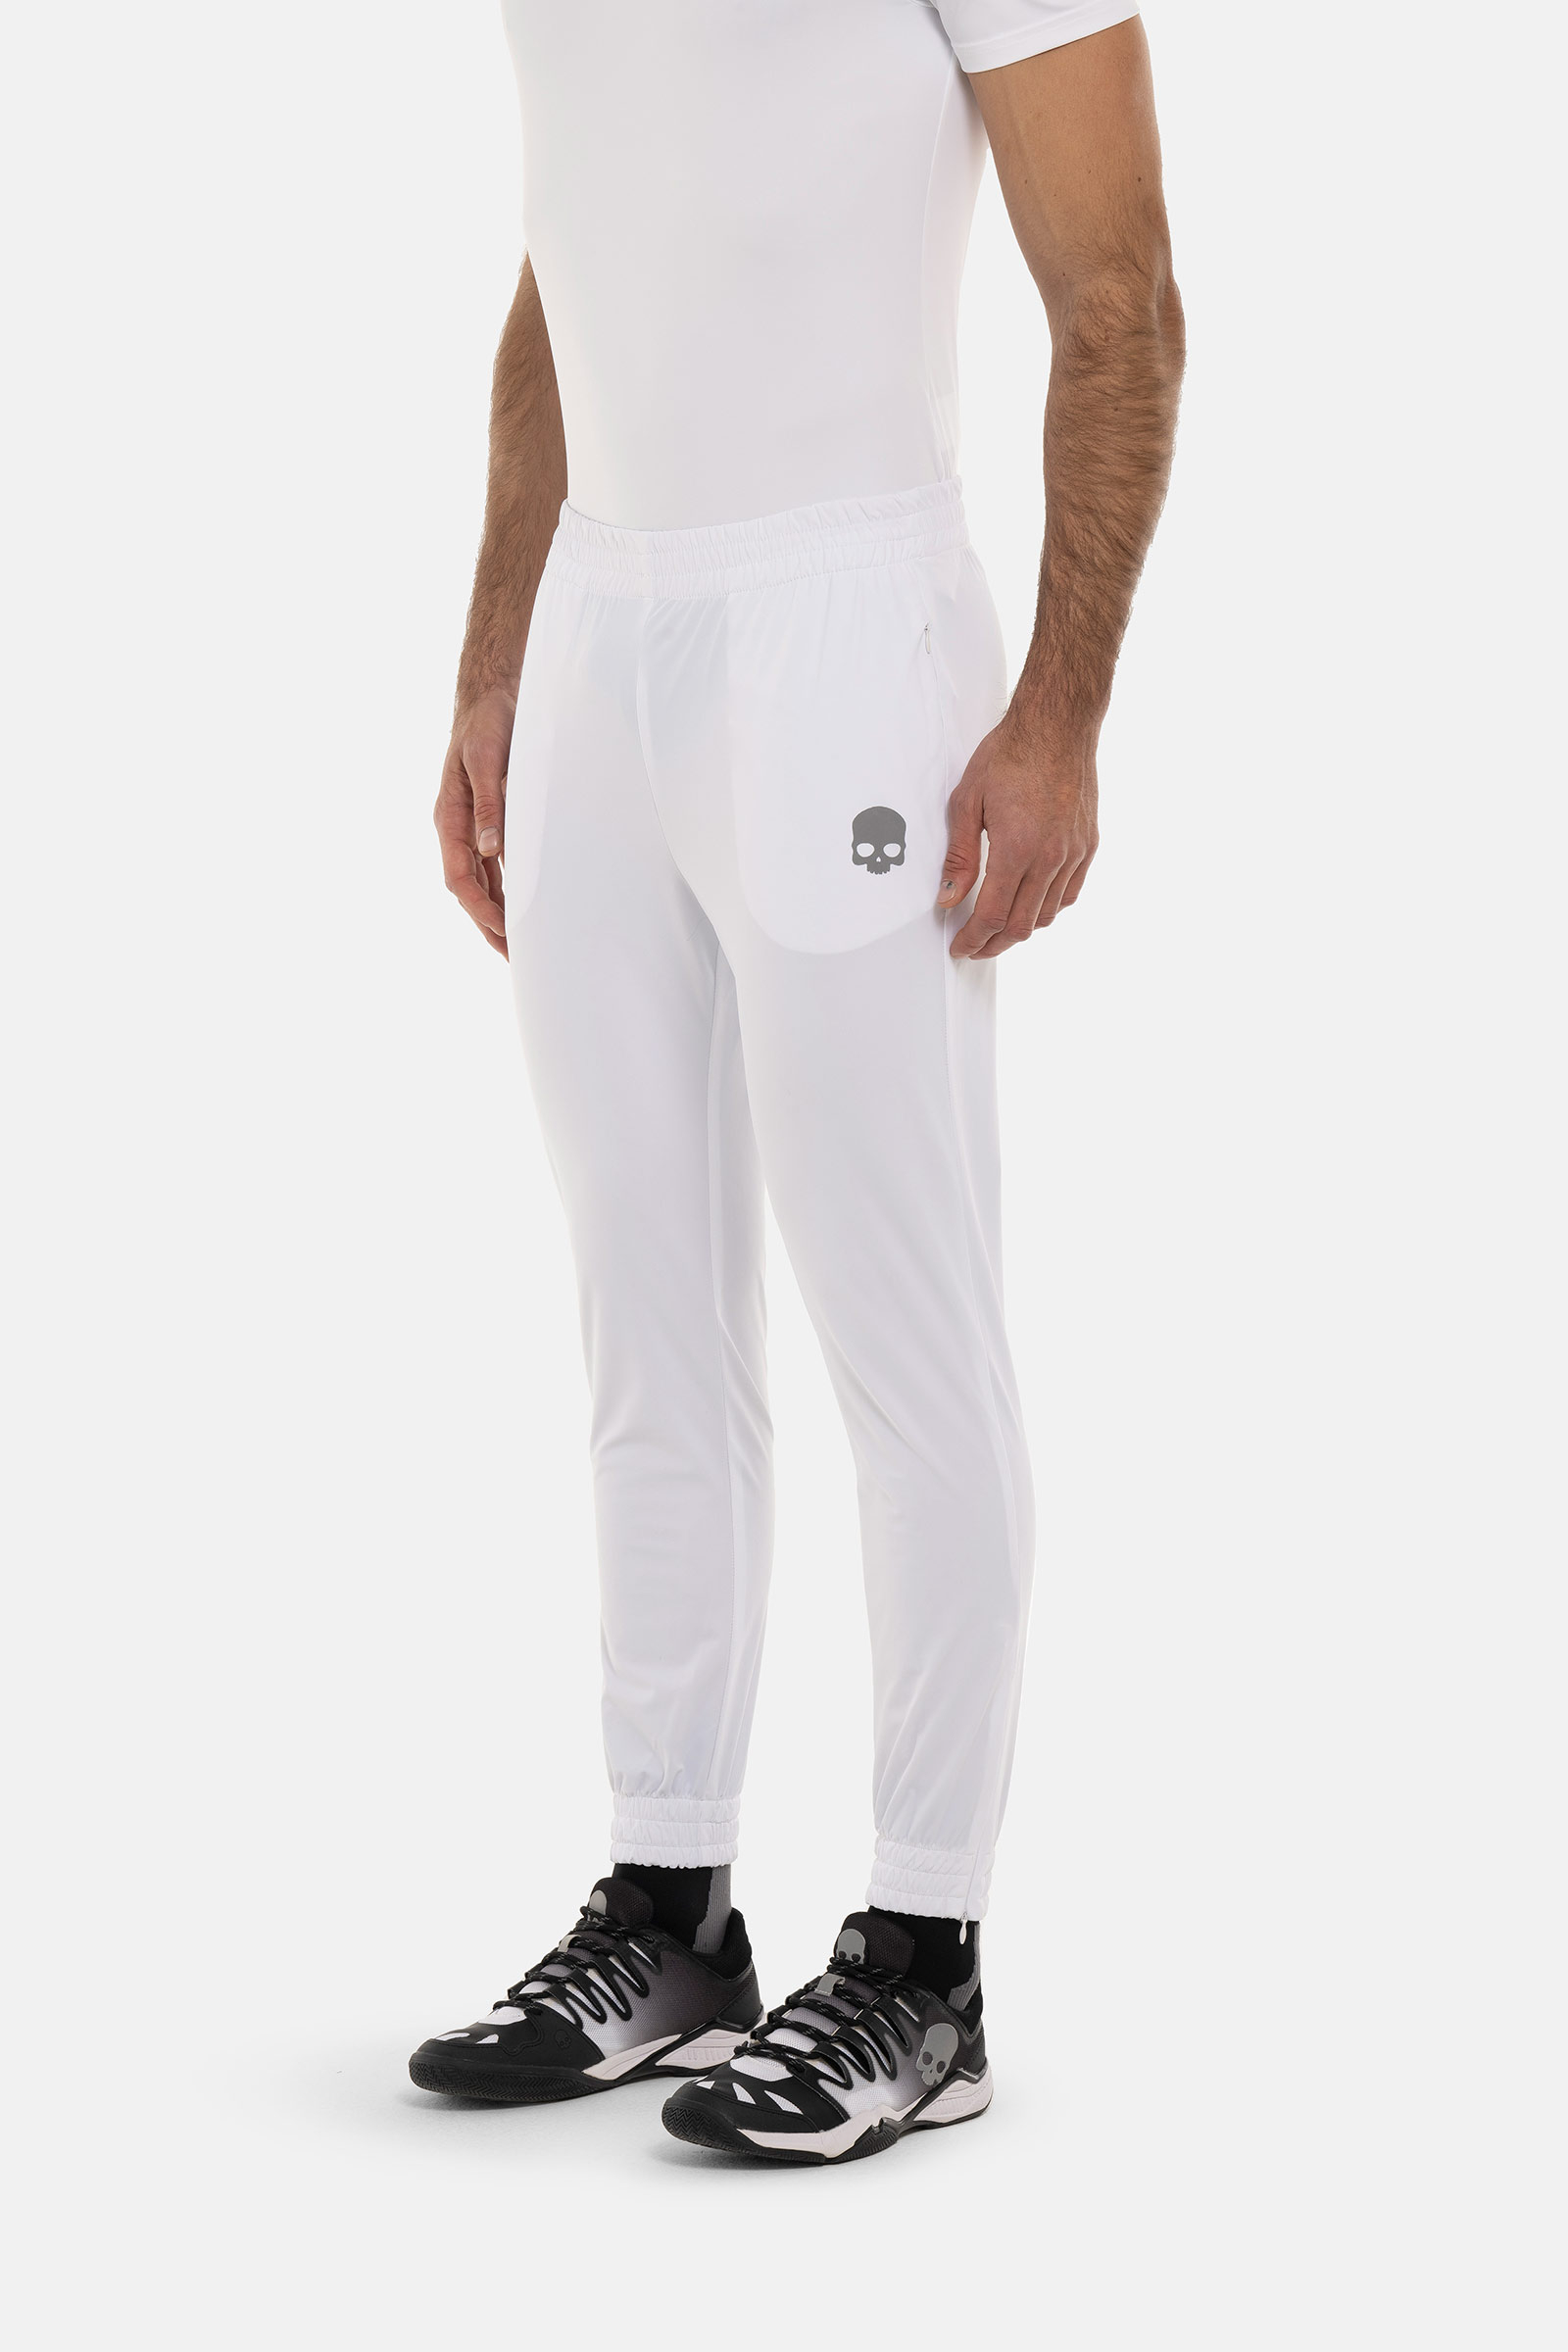 TECH PANTS SKULL - WHITE - Hydrogen - Luxury Sportwear